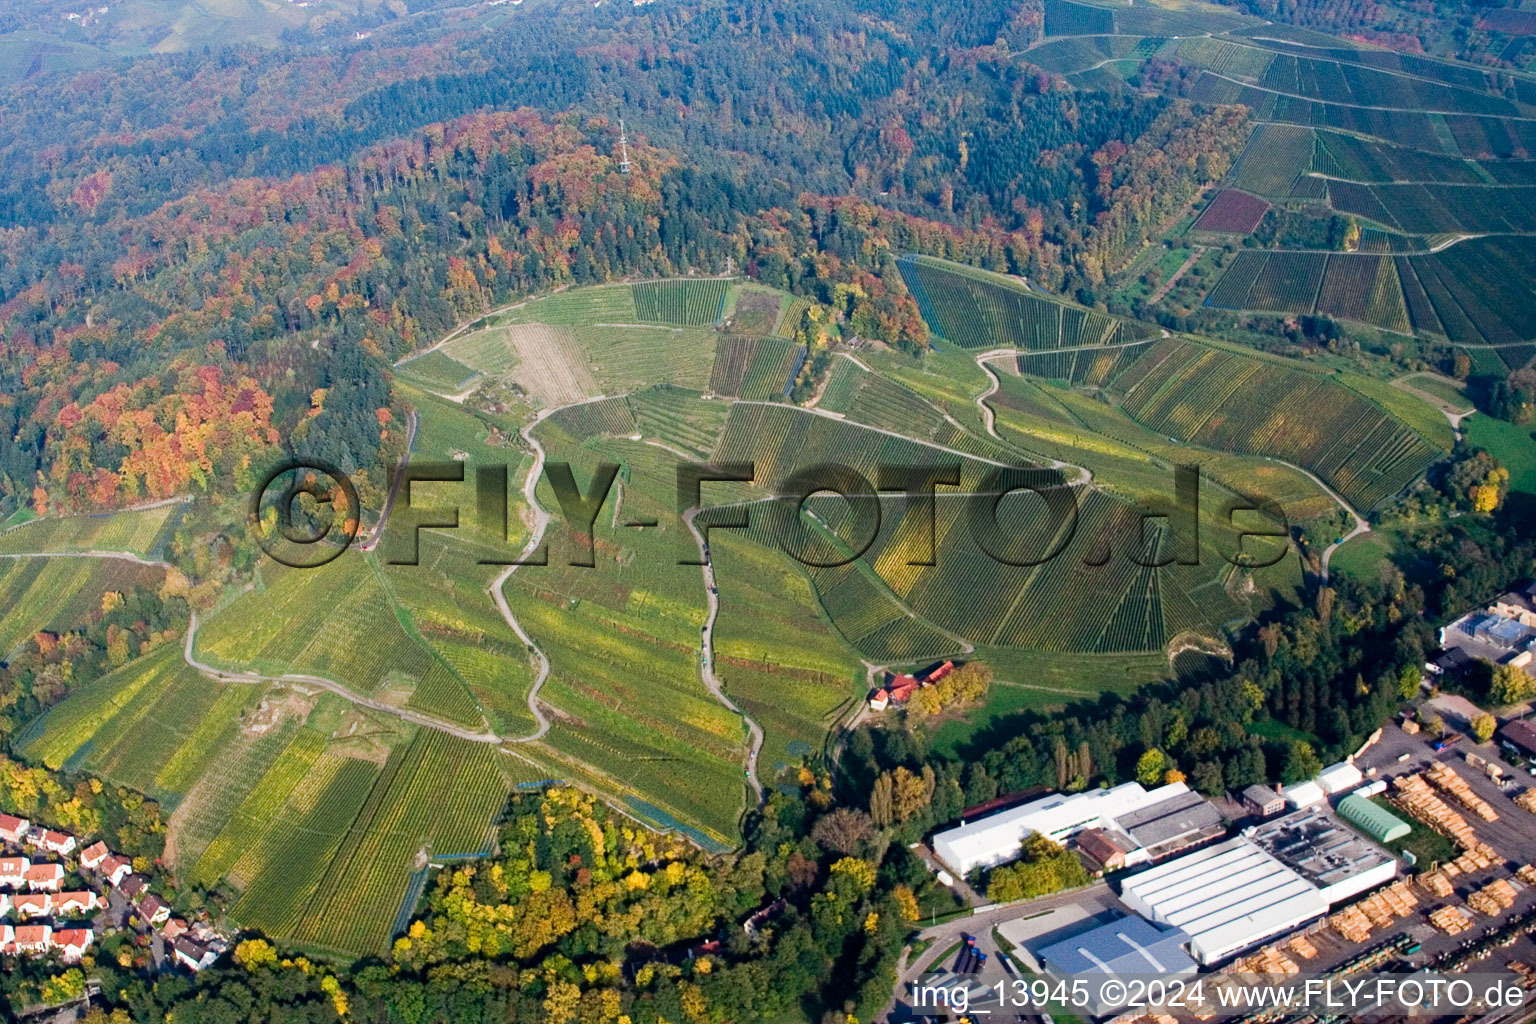 Vue aérienne de Paysage viticole des zones viticoles au-dessus de la scierie de la Forêt-Noire dans le district d'Oberachern à Achern dans le département Bade-Wurtemberg, Allemagne